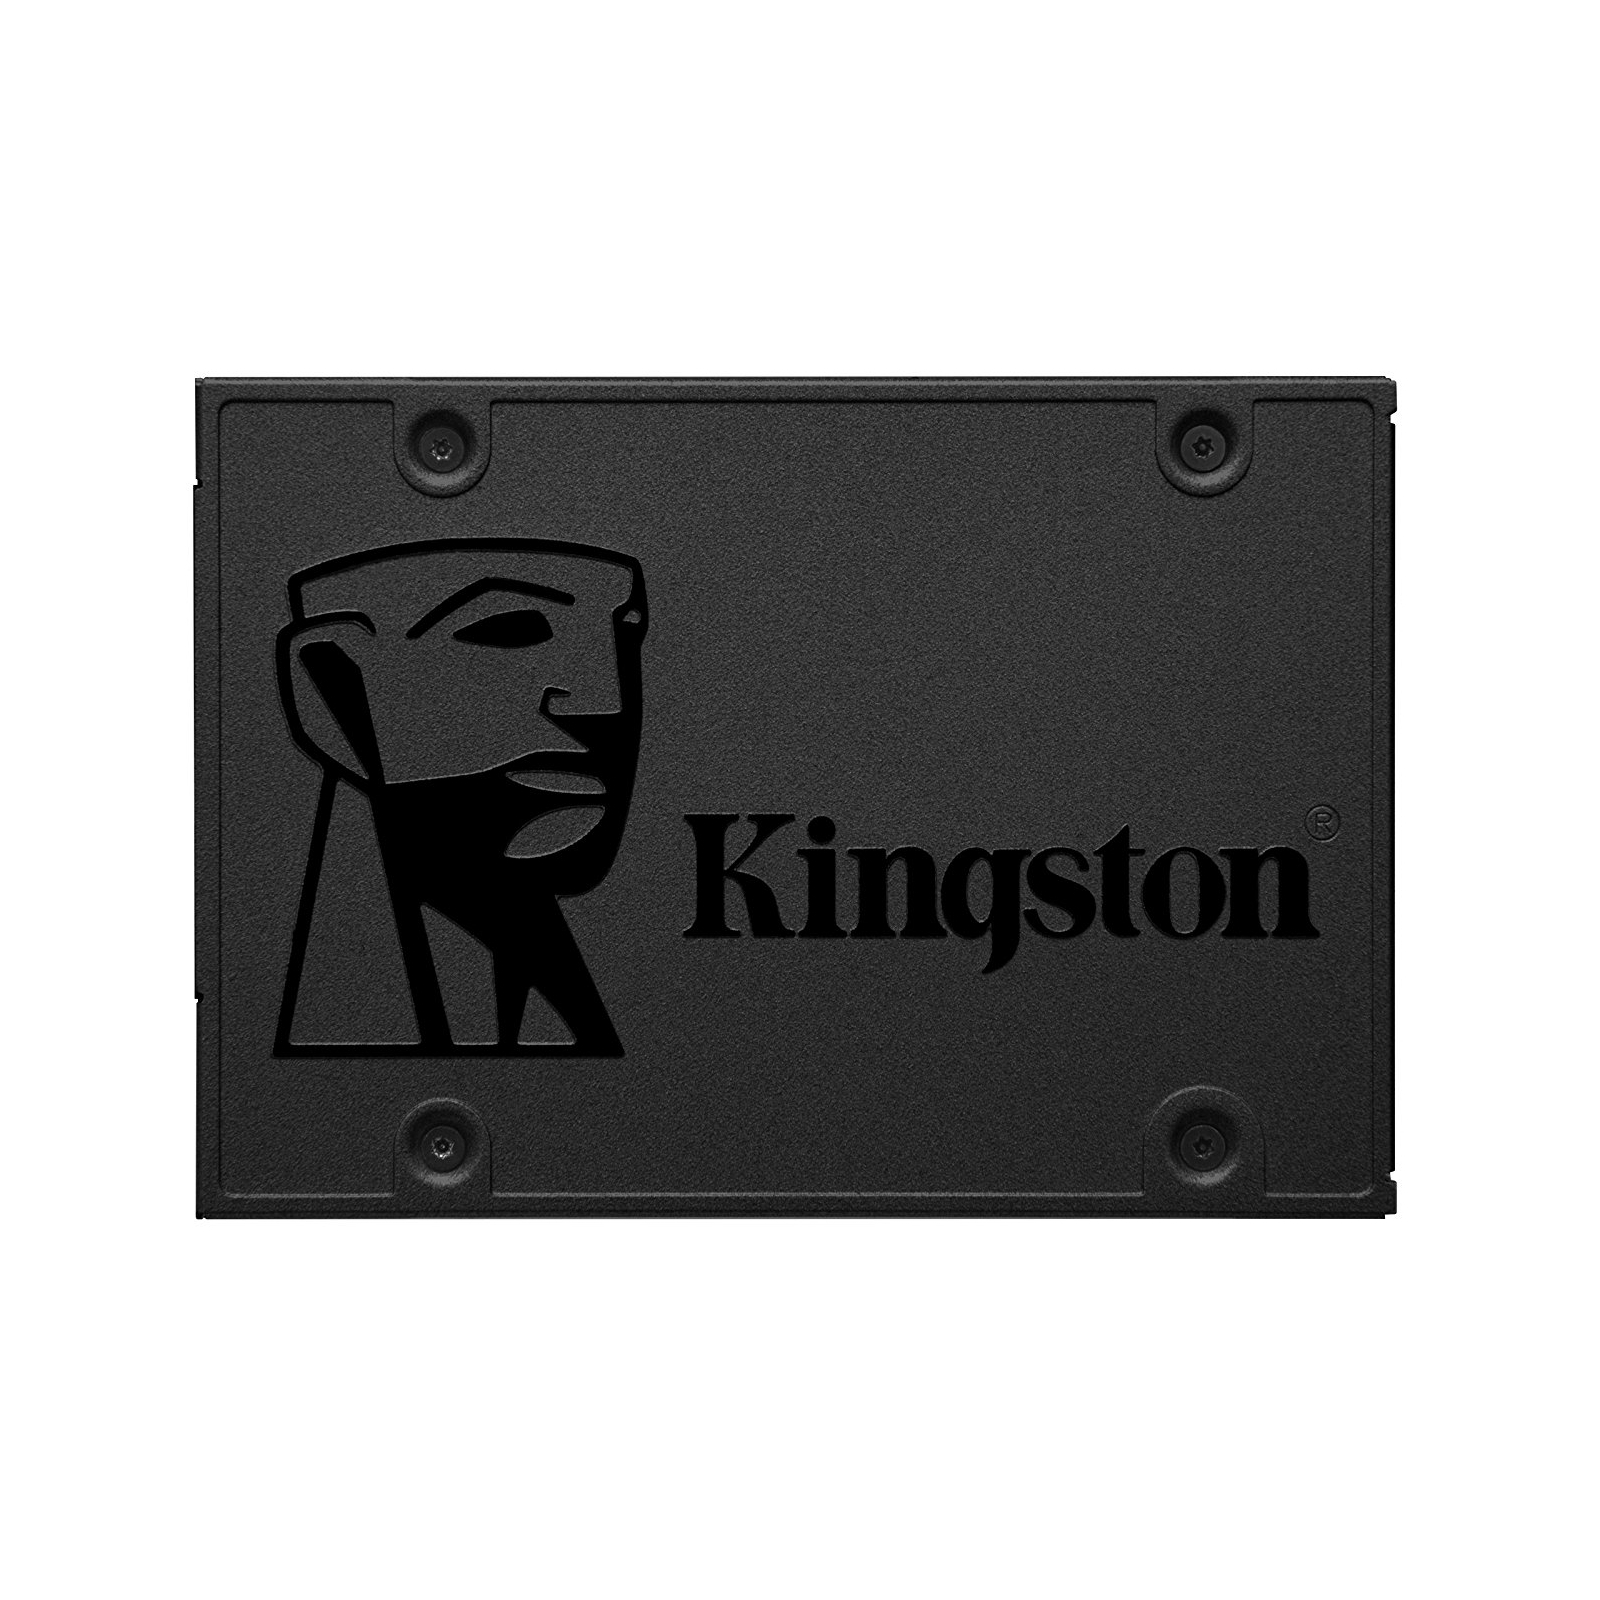 Накопитель SSD 2.5" 960GB Kingston (SA400S37/960G)